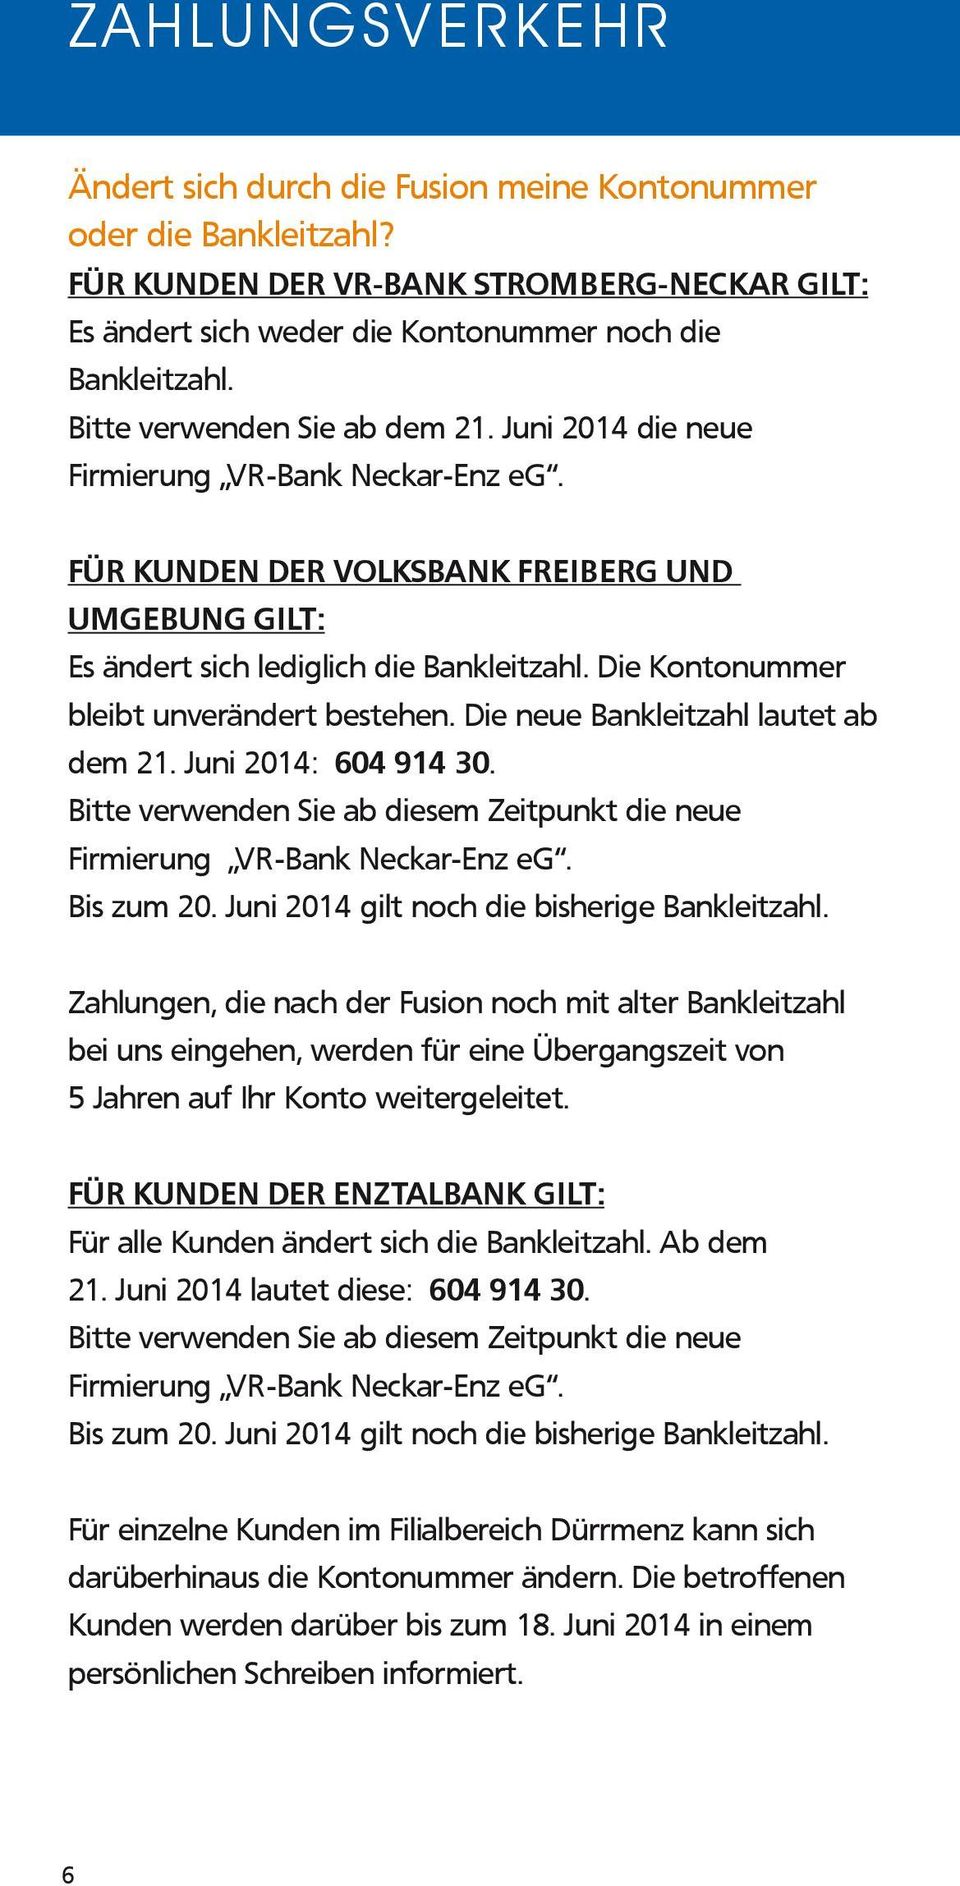 Die Kontonummer bleibt unverändert bestehen. Die neue Bankleitzahl lautet ab dem 21. Juni 2014: 604 914 30. Bitte verwenden Sie ab diesem Zeitpunkt die neue Firmierung VR-Bank Neckar-Enz eg.